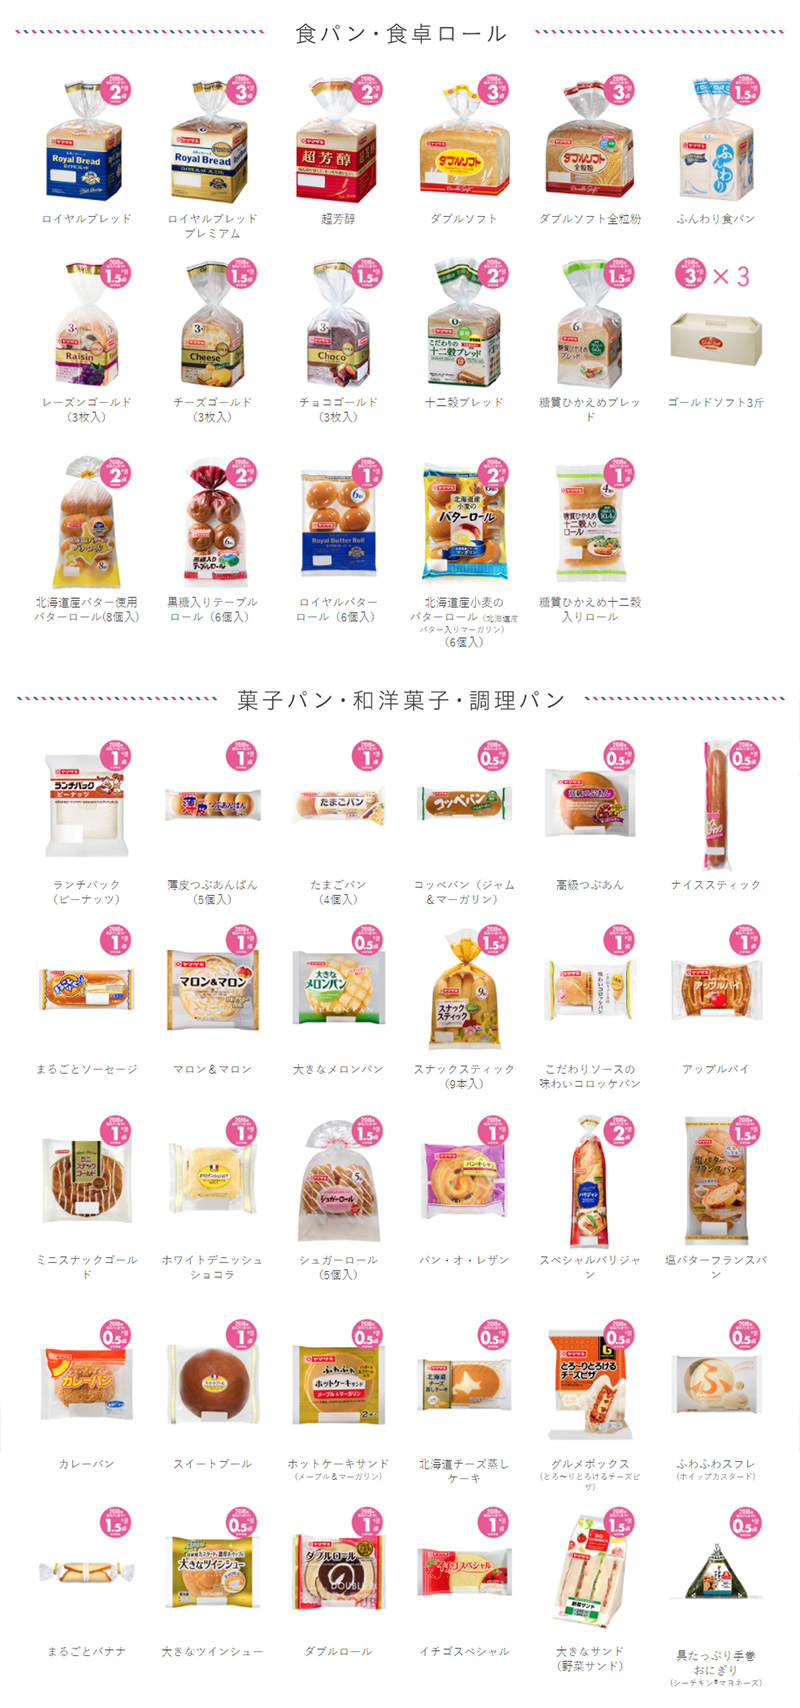 ヤマザキ春のパン祭り2018 対象商品